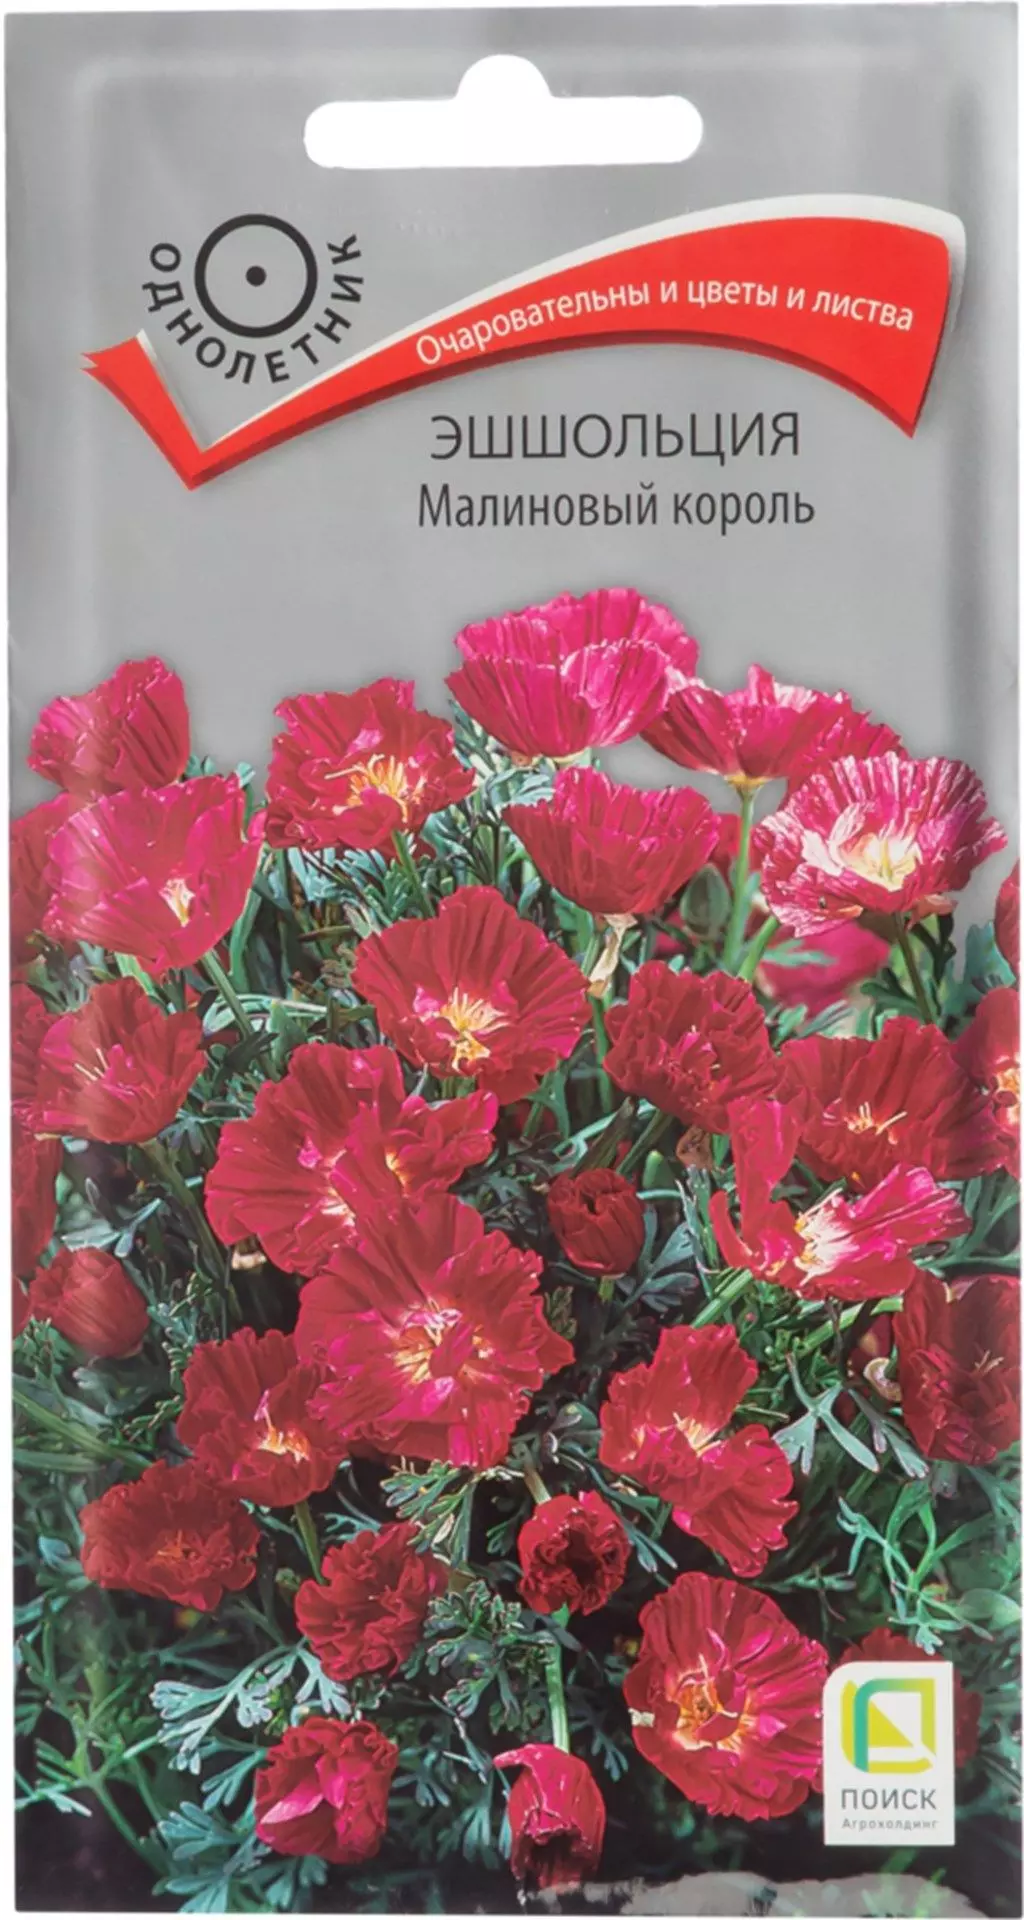 Семена цветов Эшшольция Малиновый король. ПОИСК Ц/П 0.2 г